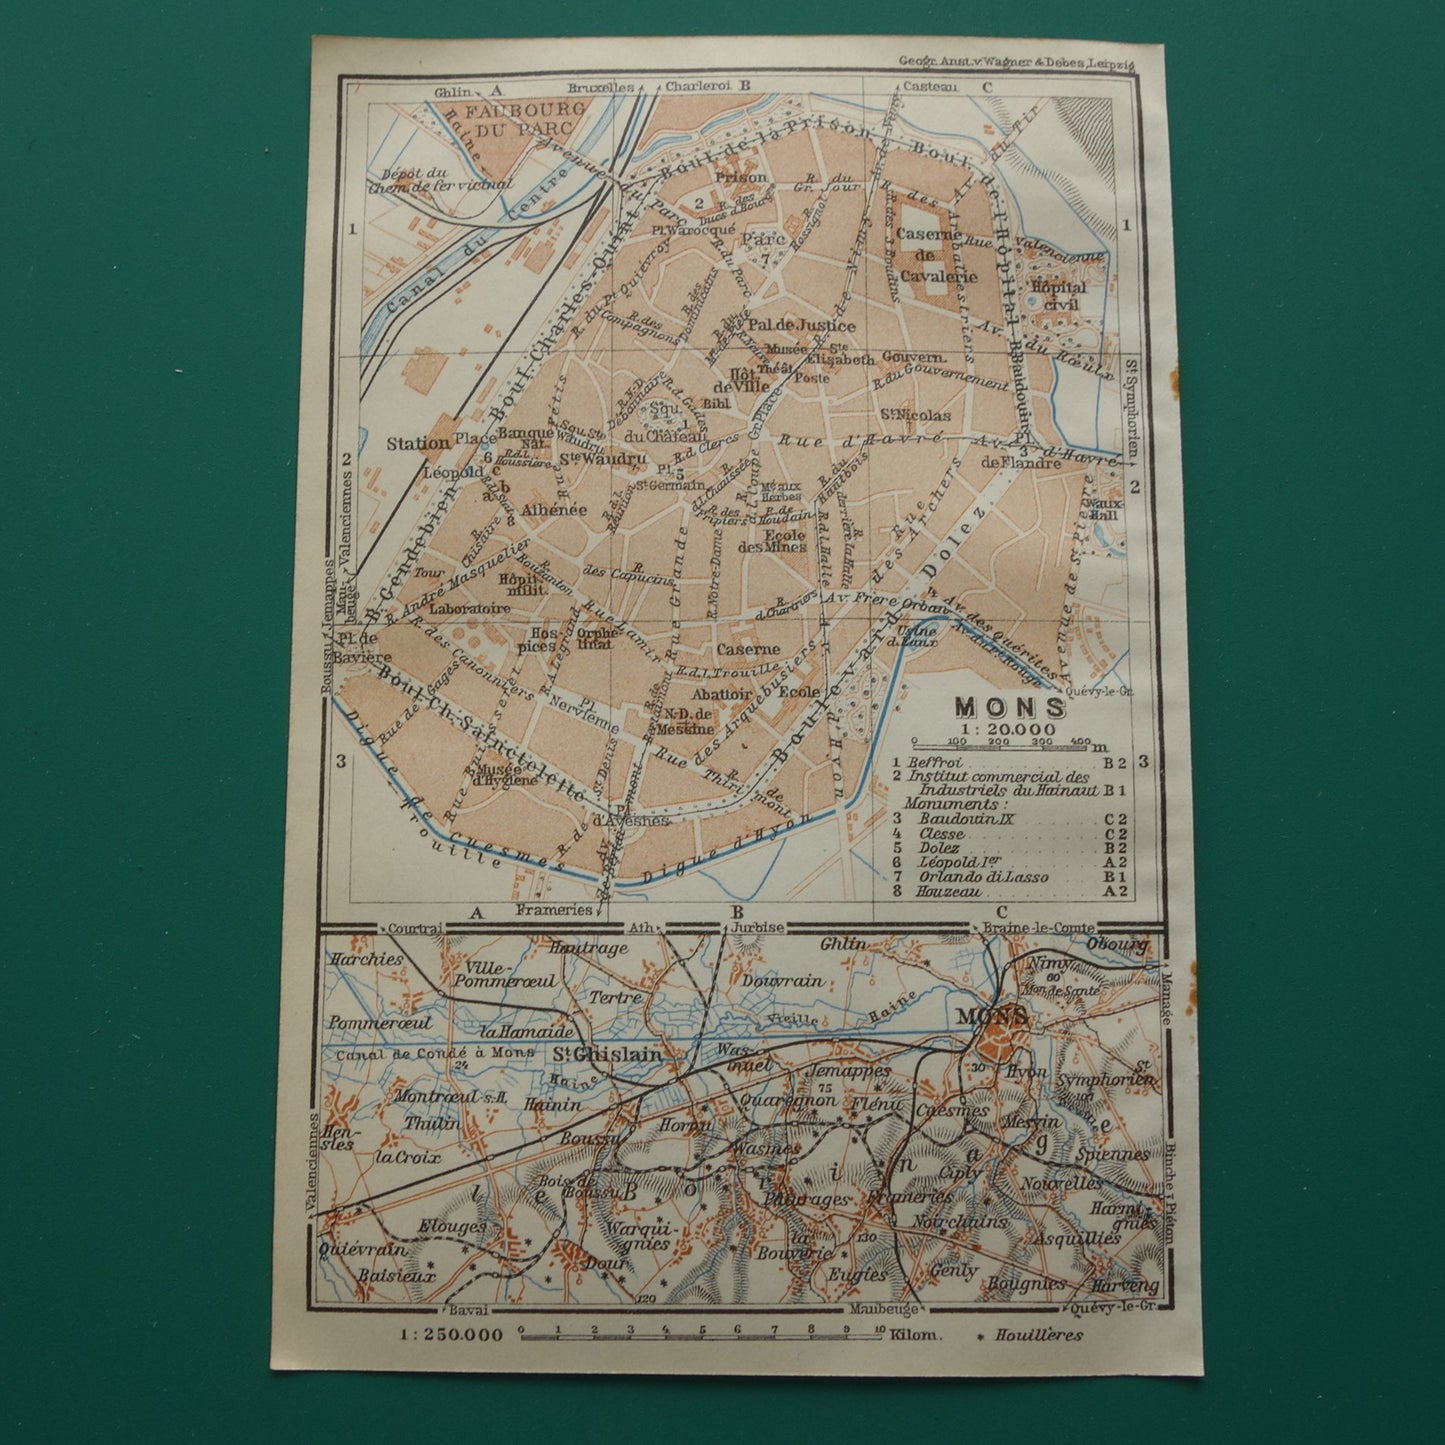 MONS oude kaart van Bergen België uit 1914 kleine originele antieke plattegrond landkaart Mons / Bergen